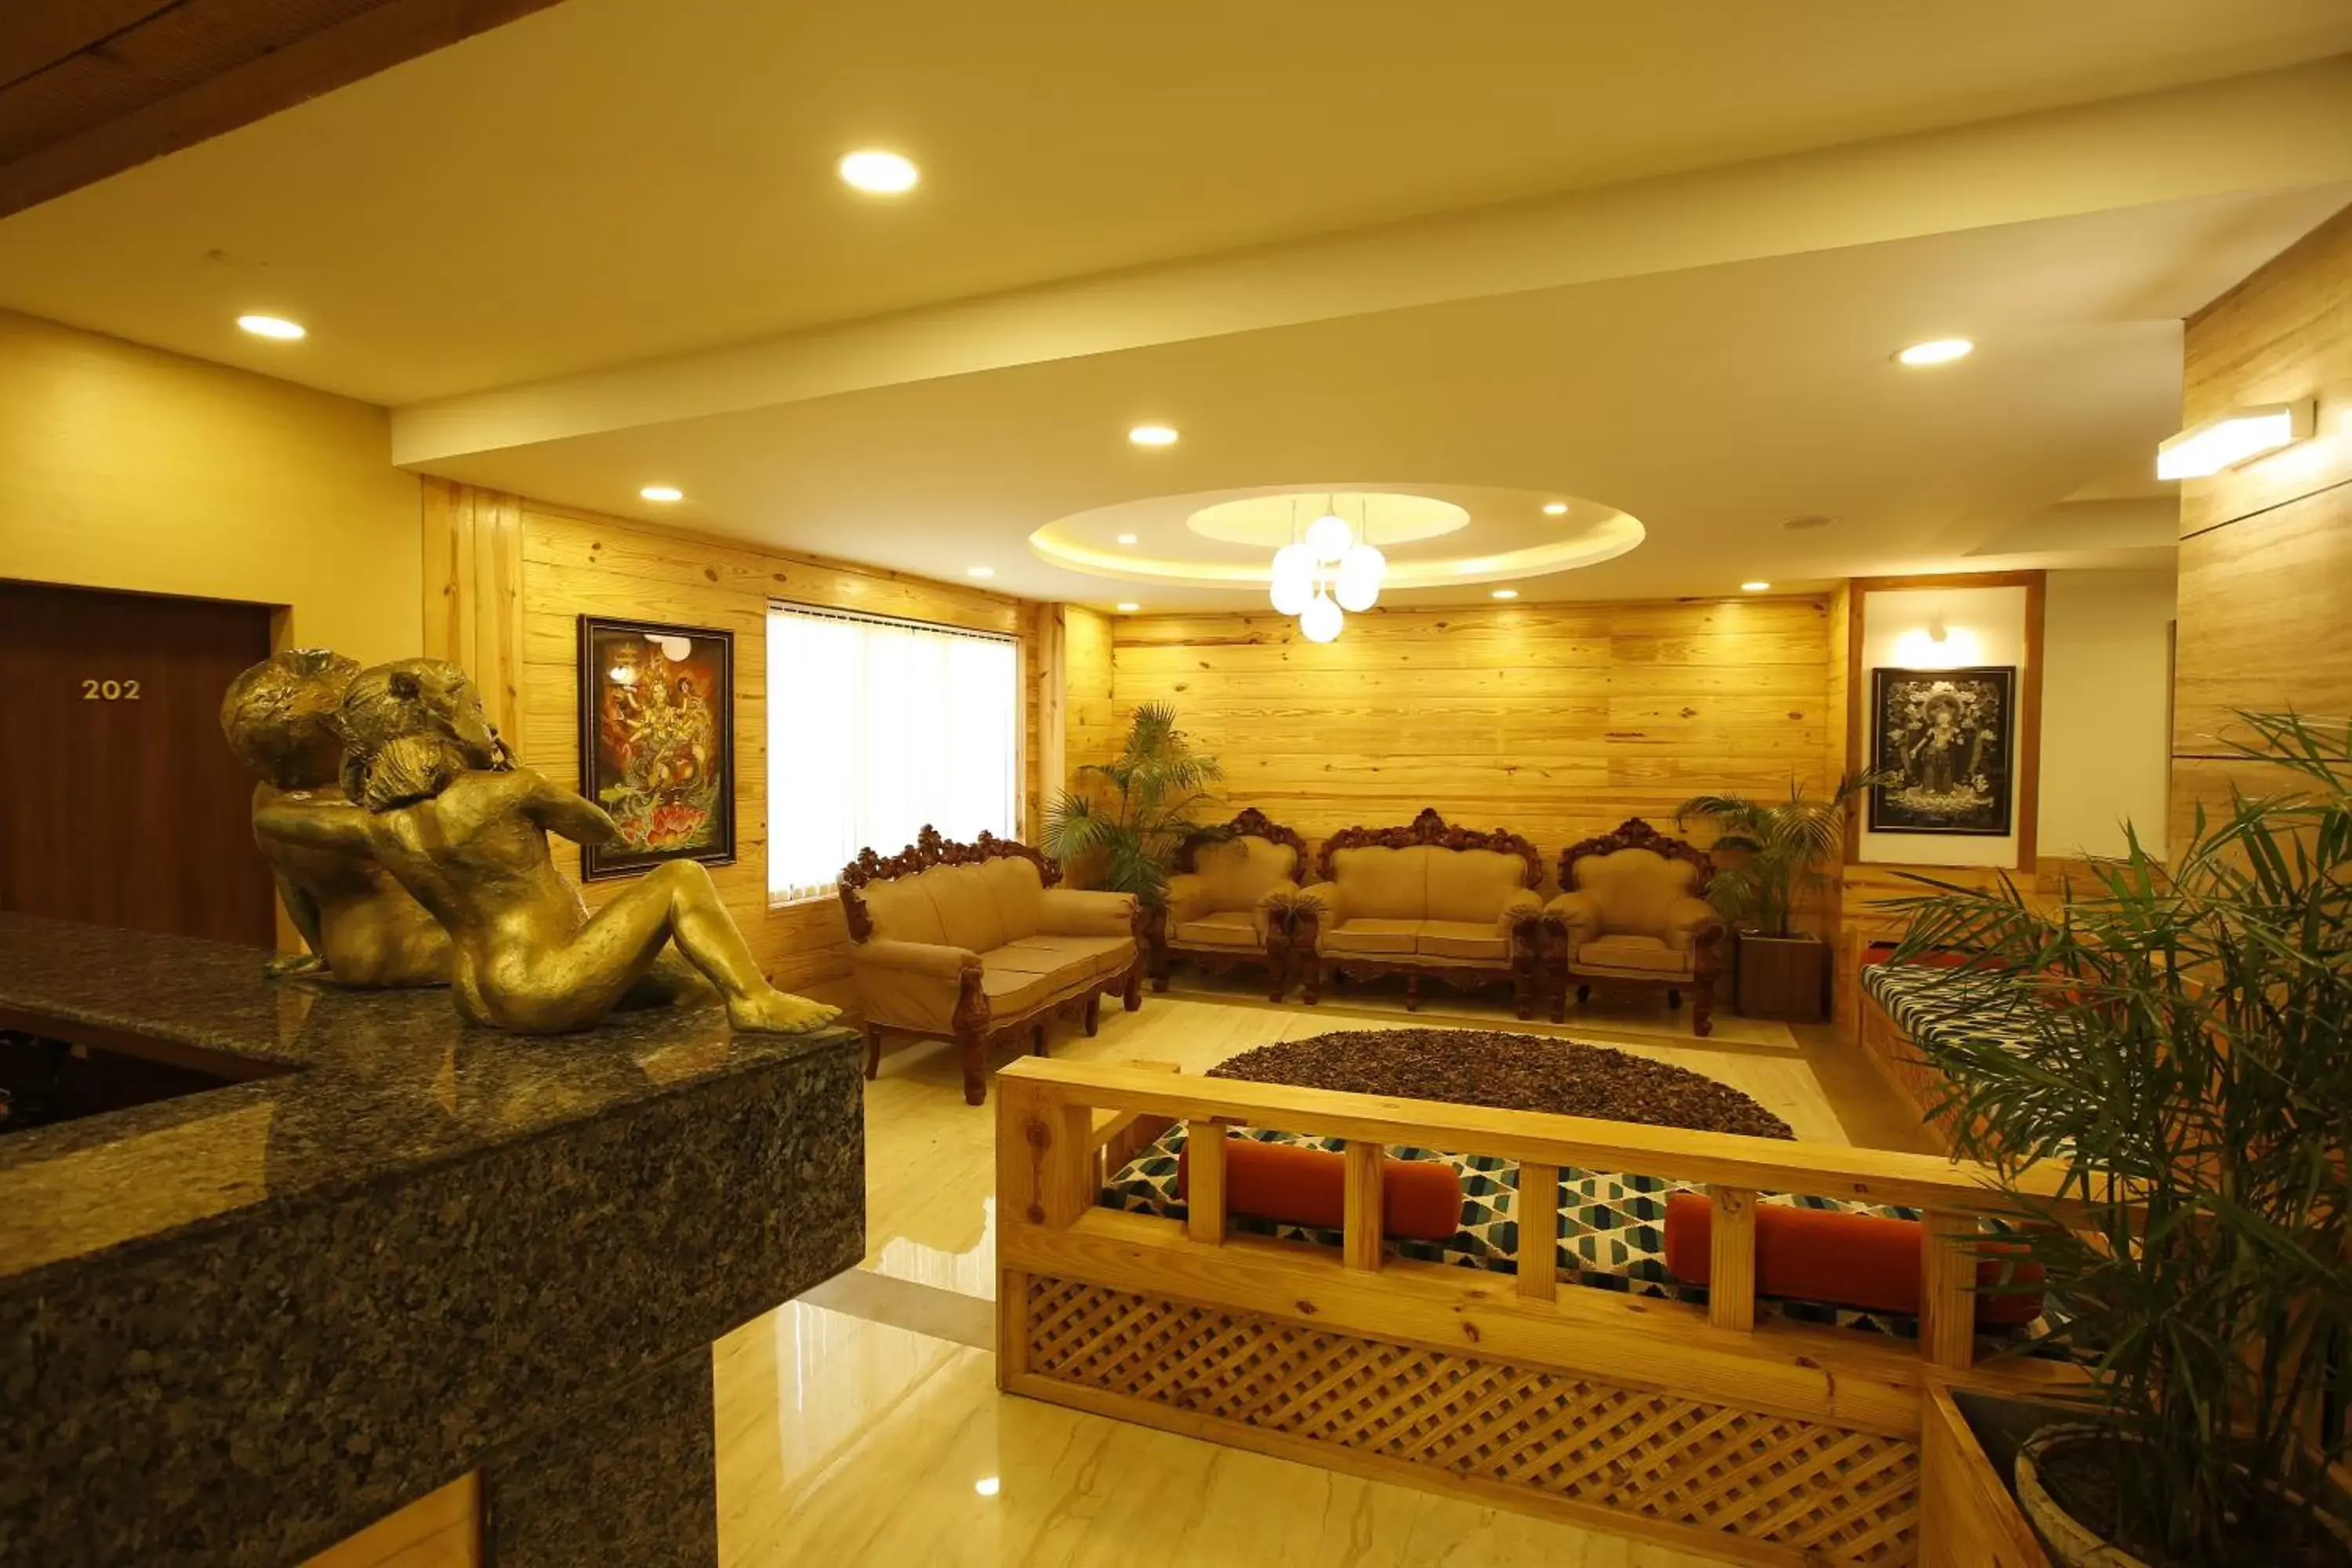 Lobby or reception in Hotel Arts Kathmandu